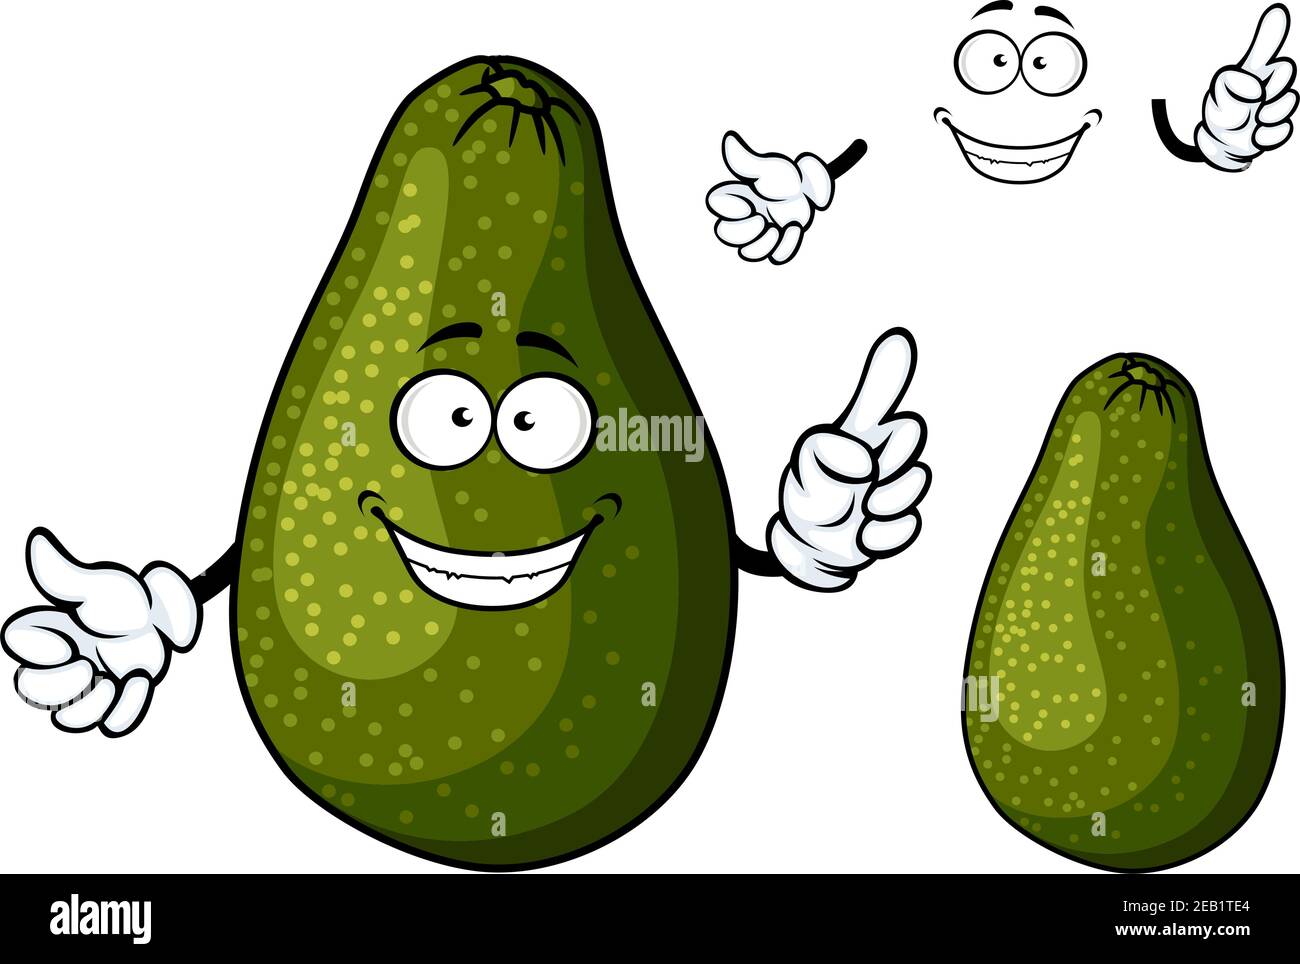 Frische reife dunkelgrüne Avocado Frucht Cartoon-Figur mit toothy Lächeln  und googly Augen geeignet für Salat, Sandwich oder Guacamole Rezept Design  Stock-Vektorgrafik - Alamy